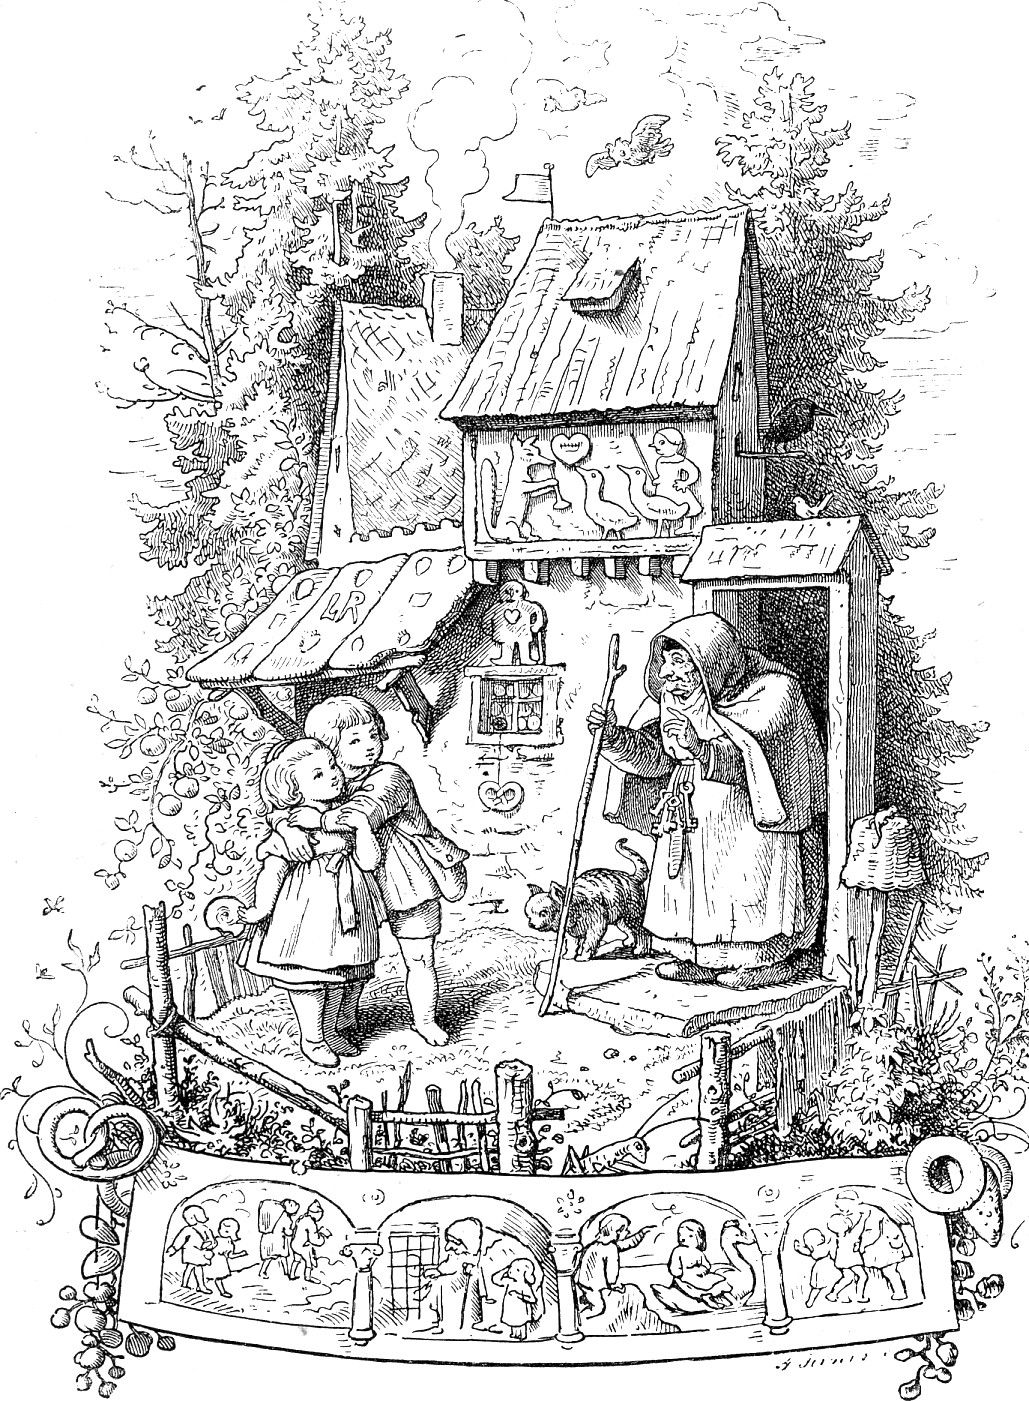 Hänsel und Gretel vor dem Hexenhaus (Haensel et Gretel devant la maison de la sorcière), gravure de Adrian Ludwig Richter, édition de 1903